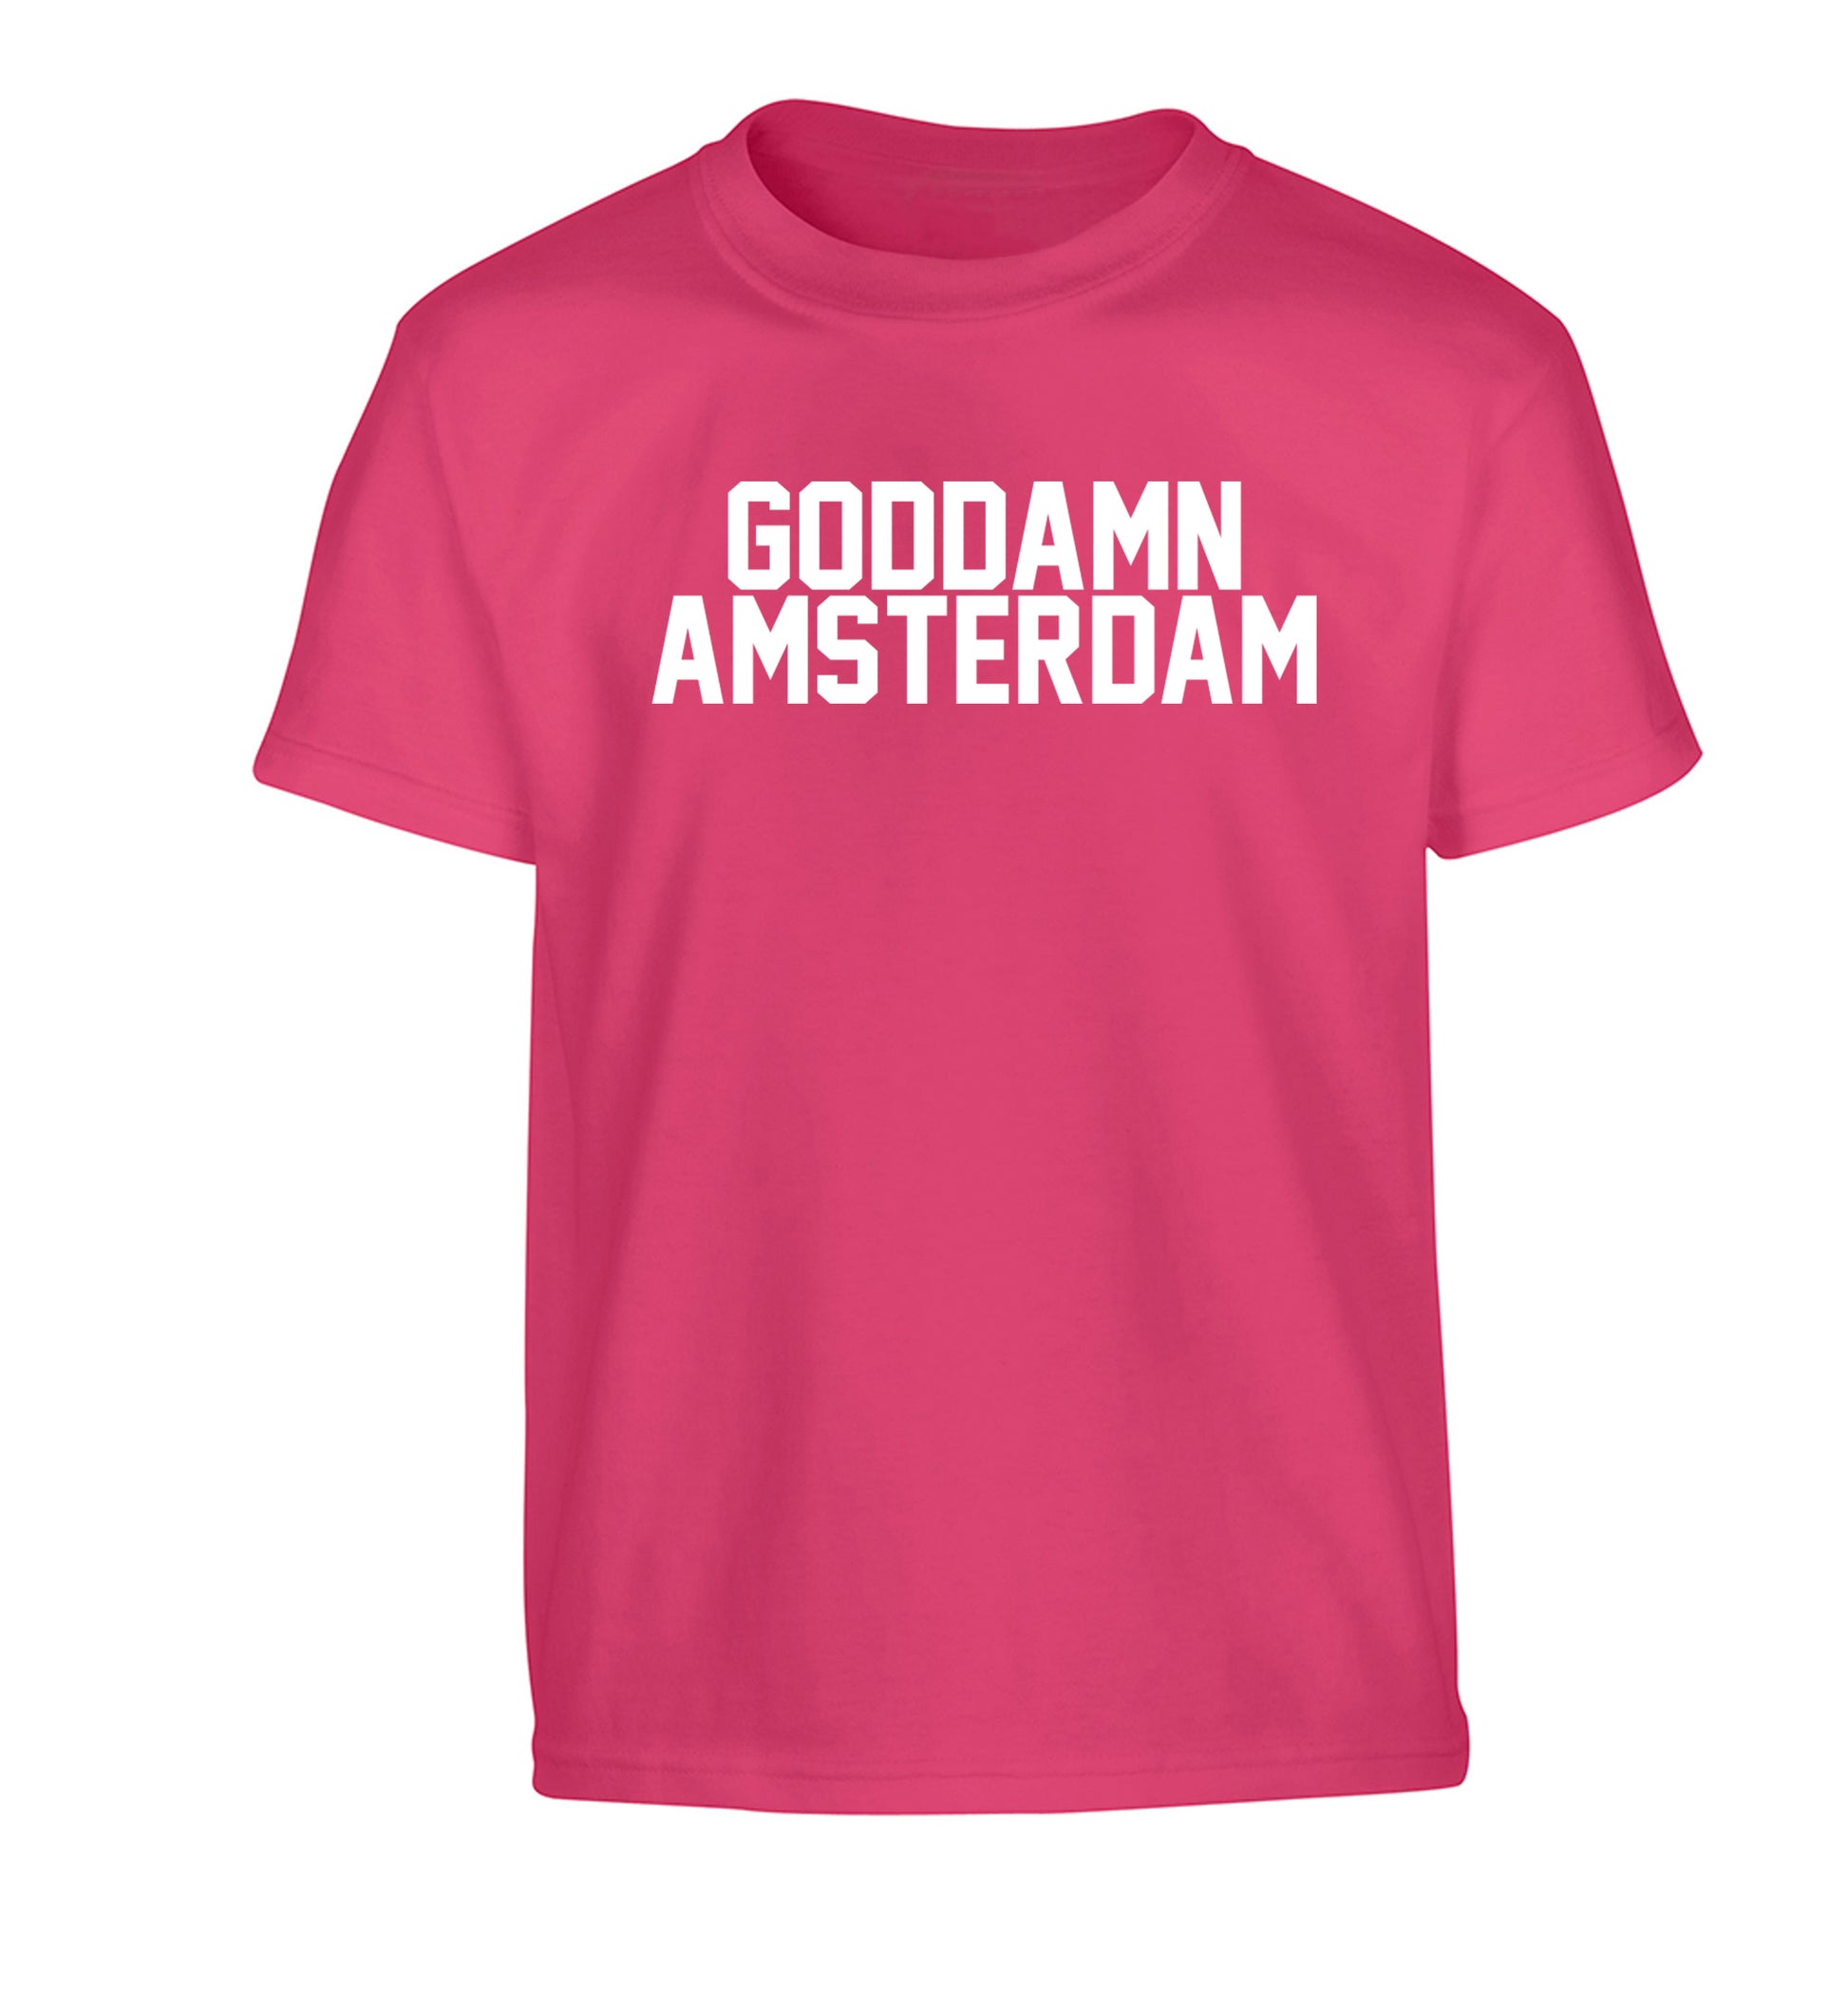 Goddamn Amsterdam Children's pink Tshirt 12-13 Years